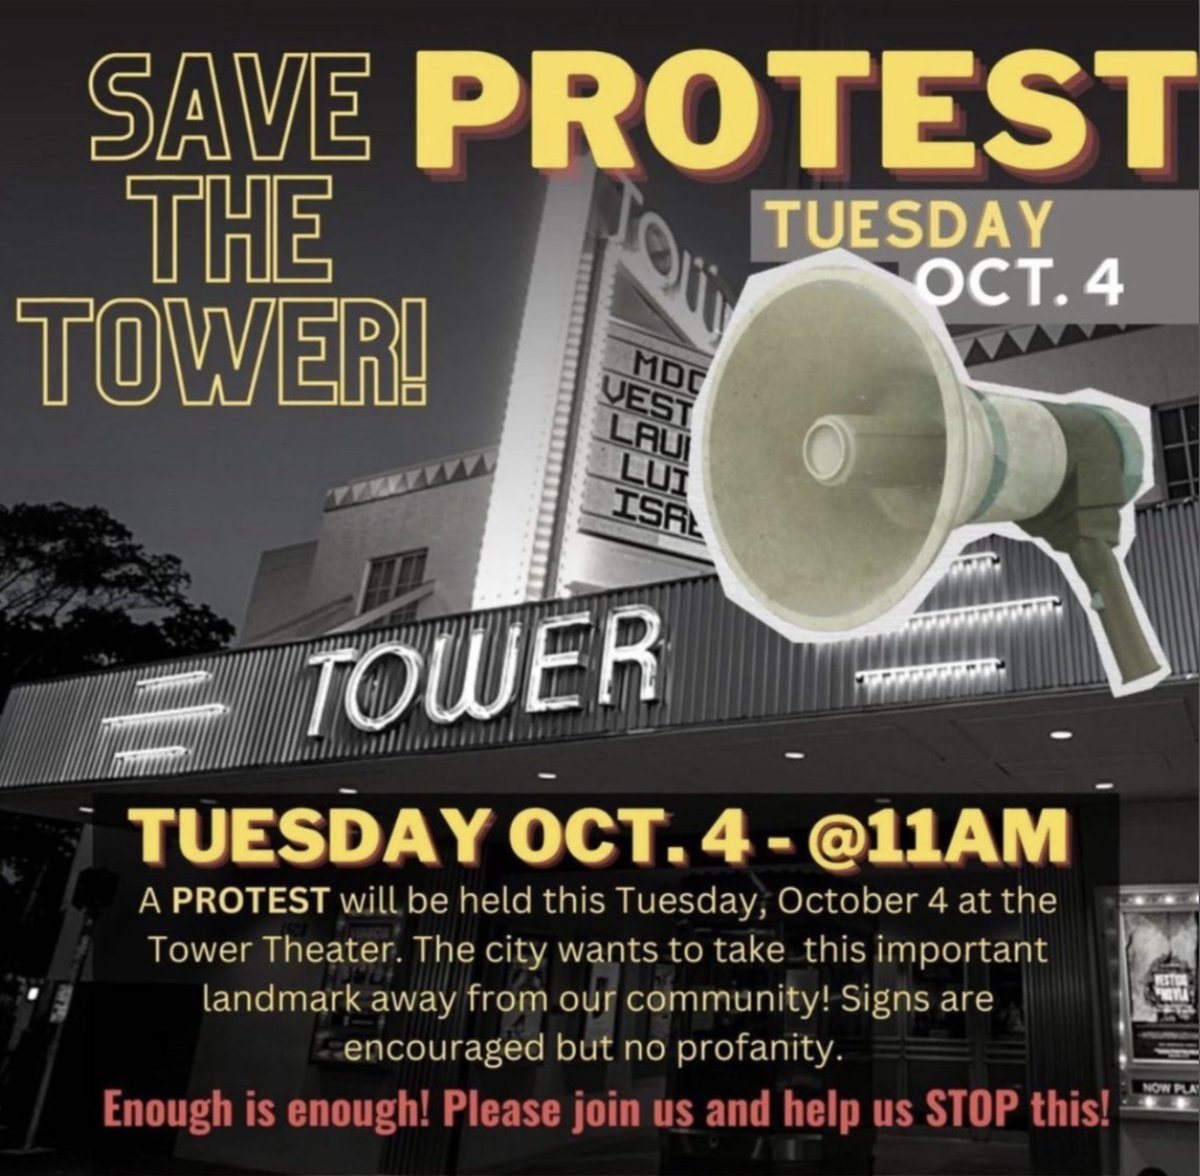 PROTEST TOMORROW TO SAVE TOWER THEATER @TowerTheaterMIA #miami #miamifilm #miamidade @philiplord @BillyCorben @RodriguezRene @MiamiHerald @MiamiNewTimes @BecauseMiami @ONLYinDADE